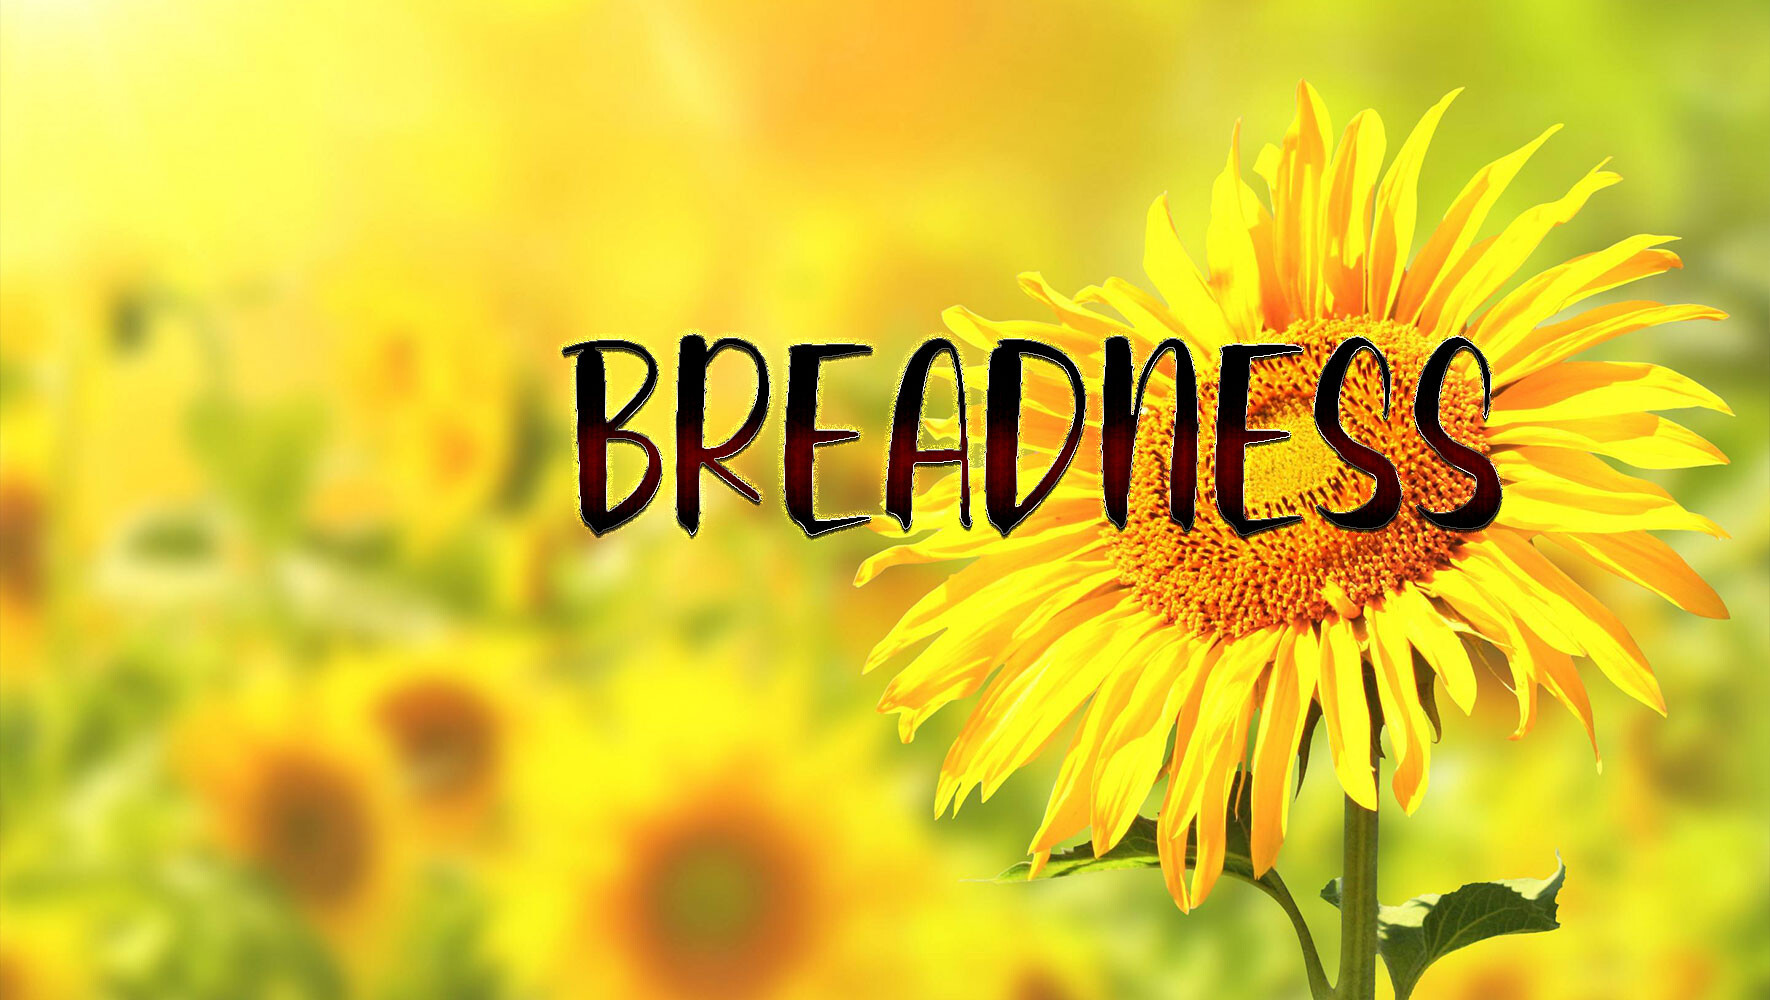 精美书法字体Breadness